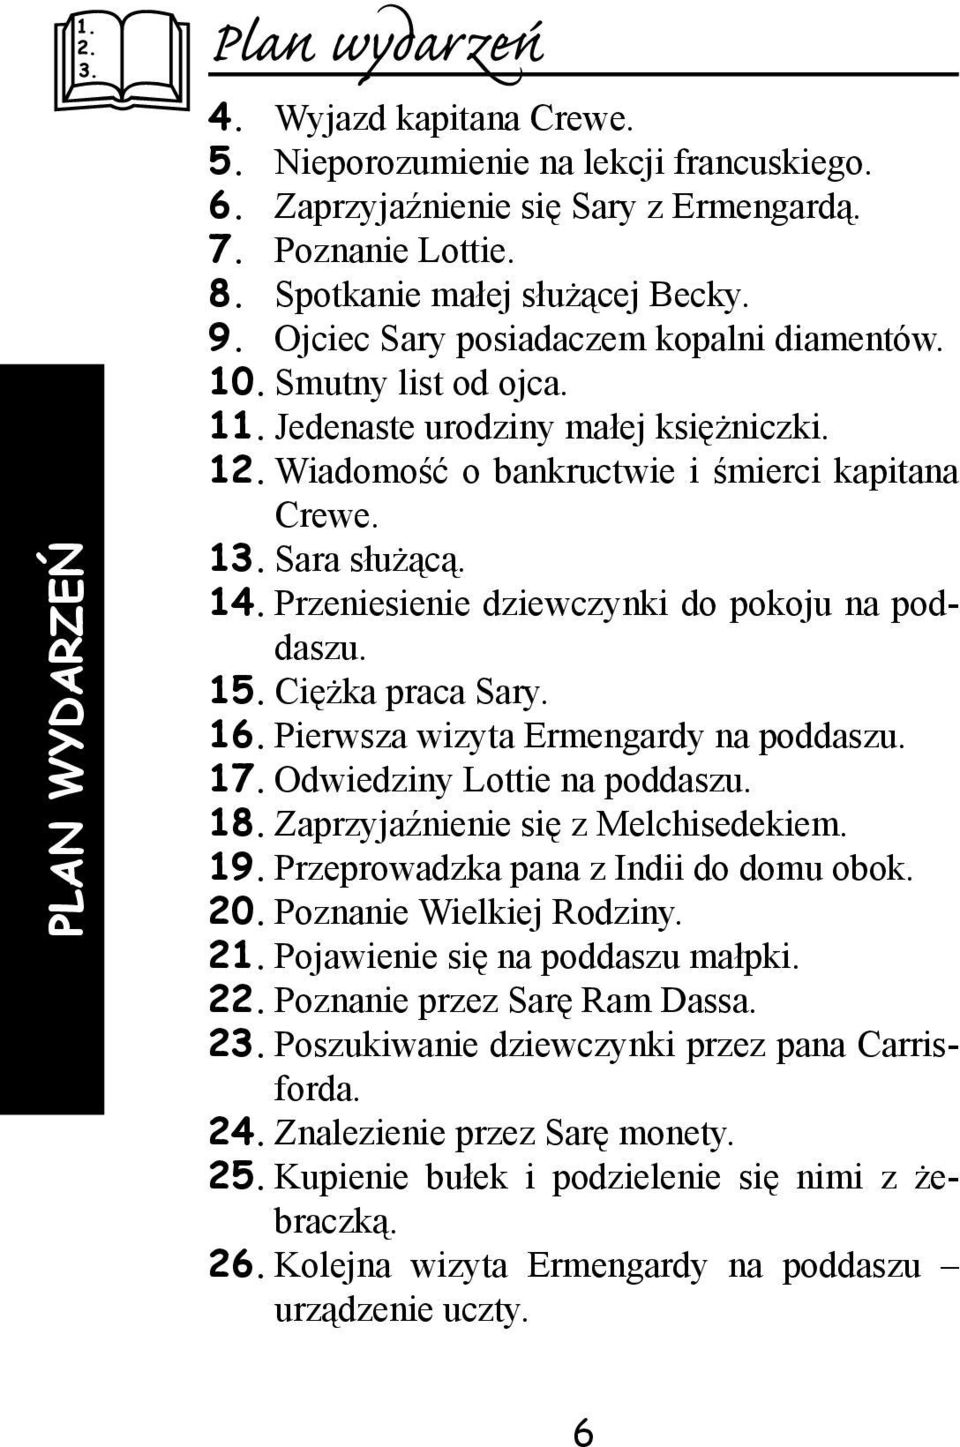 PLAN WYDARZEŃ. 24. Znalezienie przez Sarę monety. 25. Kupienie bułek i  podzielenie się nimi z żebraczką. - PDF Darmowe pobieranie